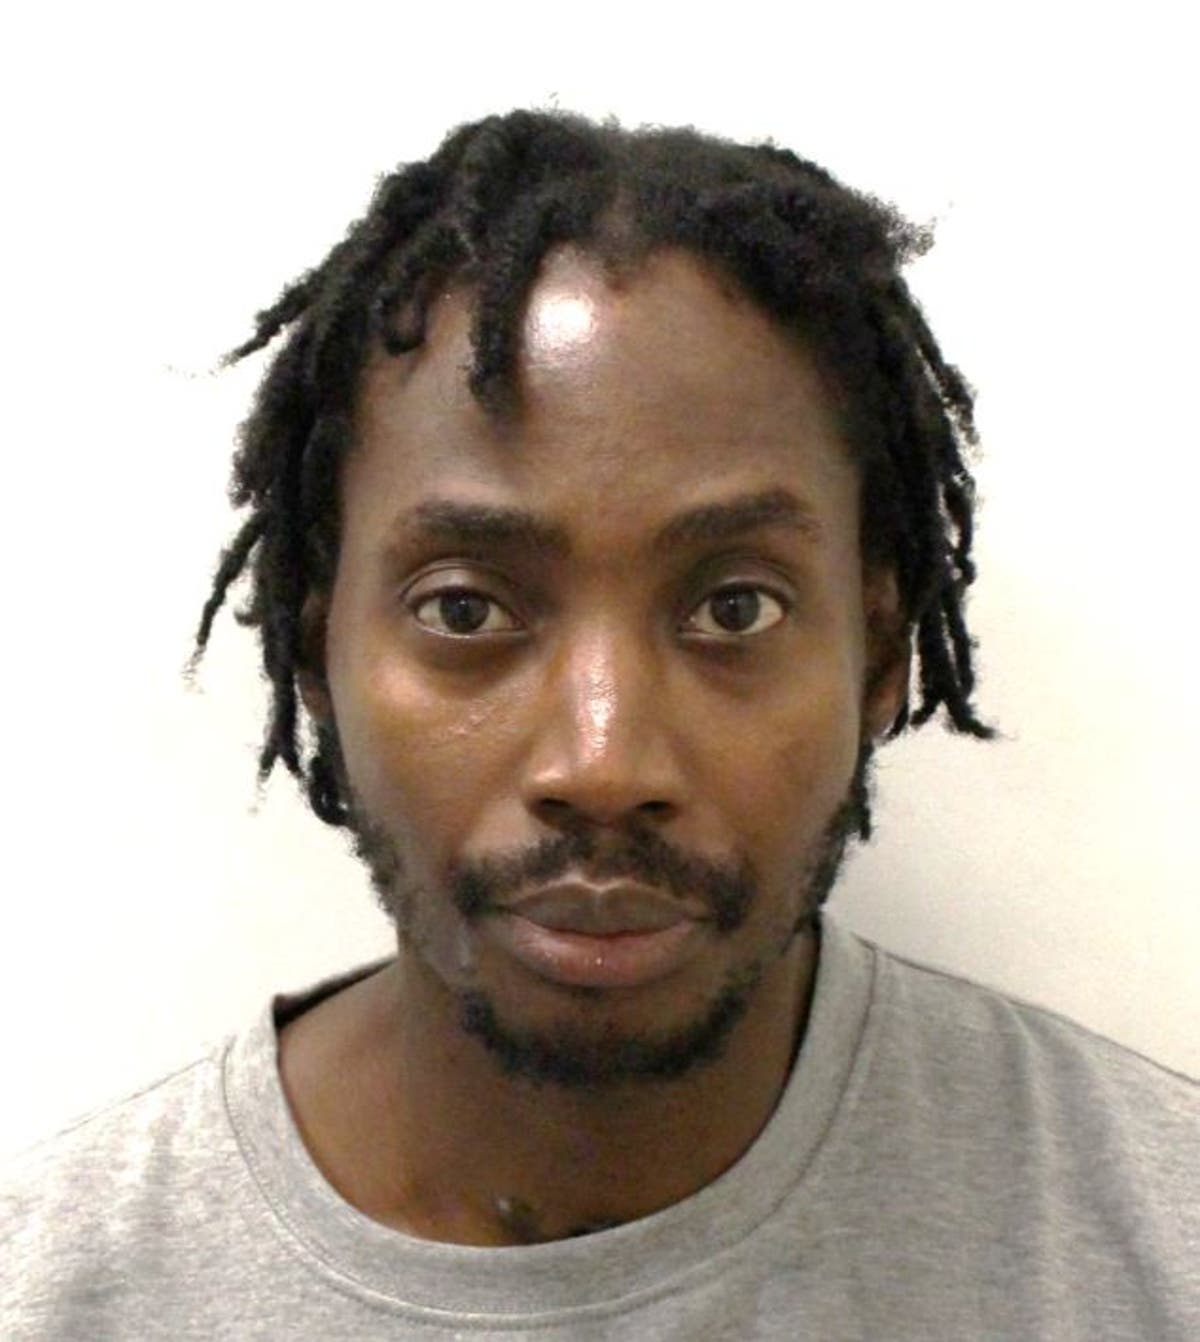 Drug dealer convicted of Finsbury Park murder after mobile phone data put him at crime scene